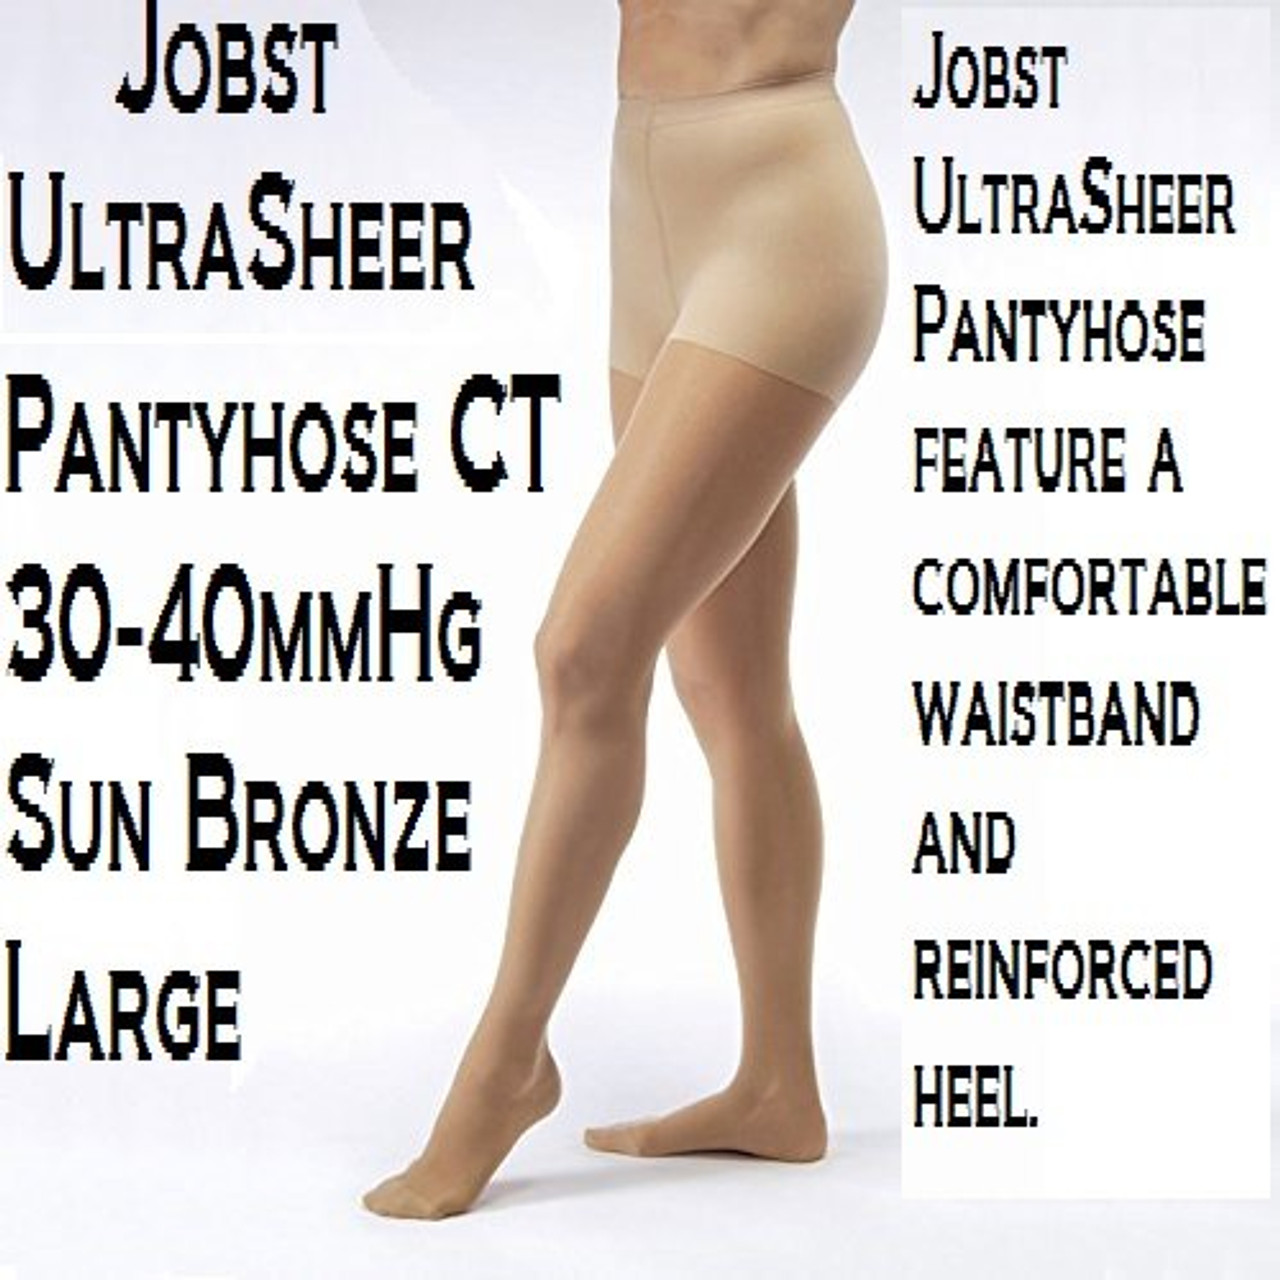 Jobst Ultrasheer Panty 15-20mmHg - Jobst